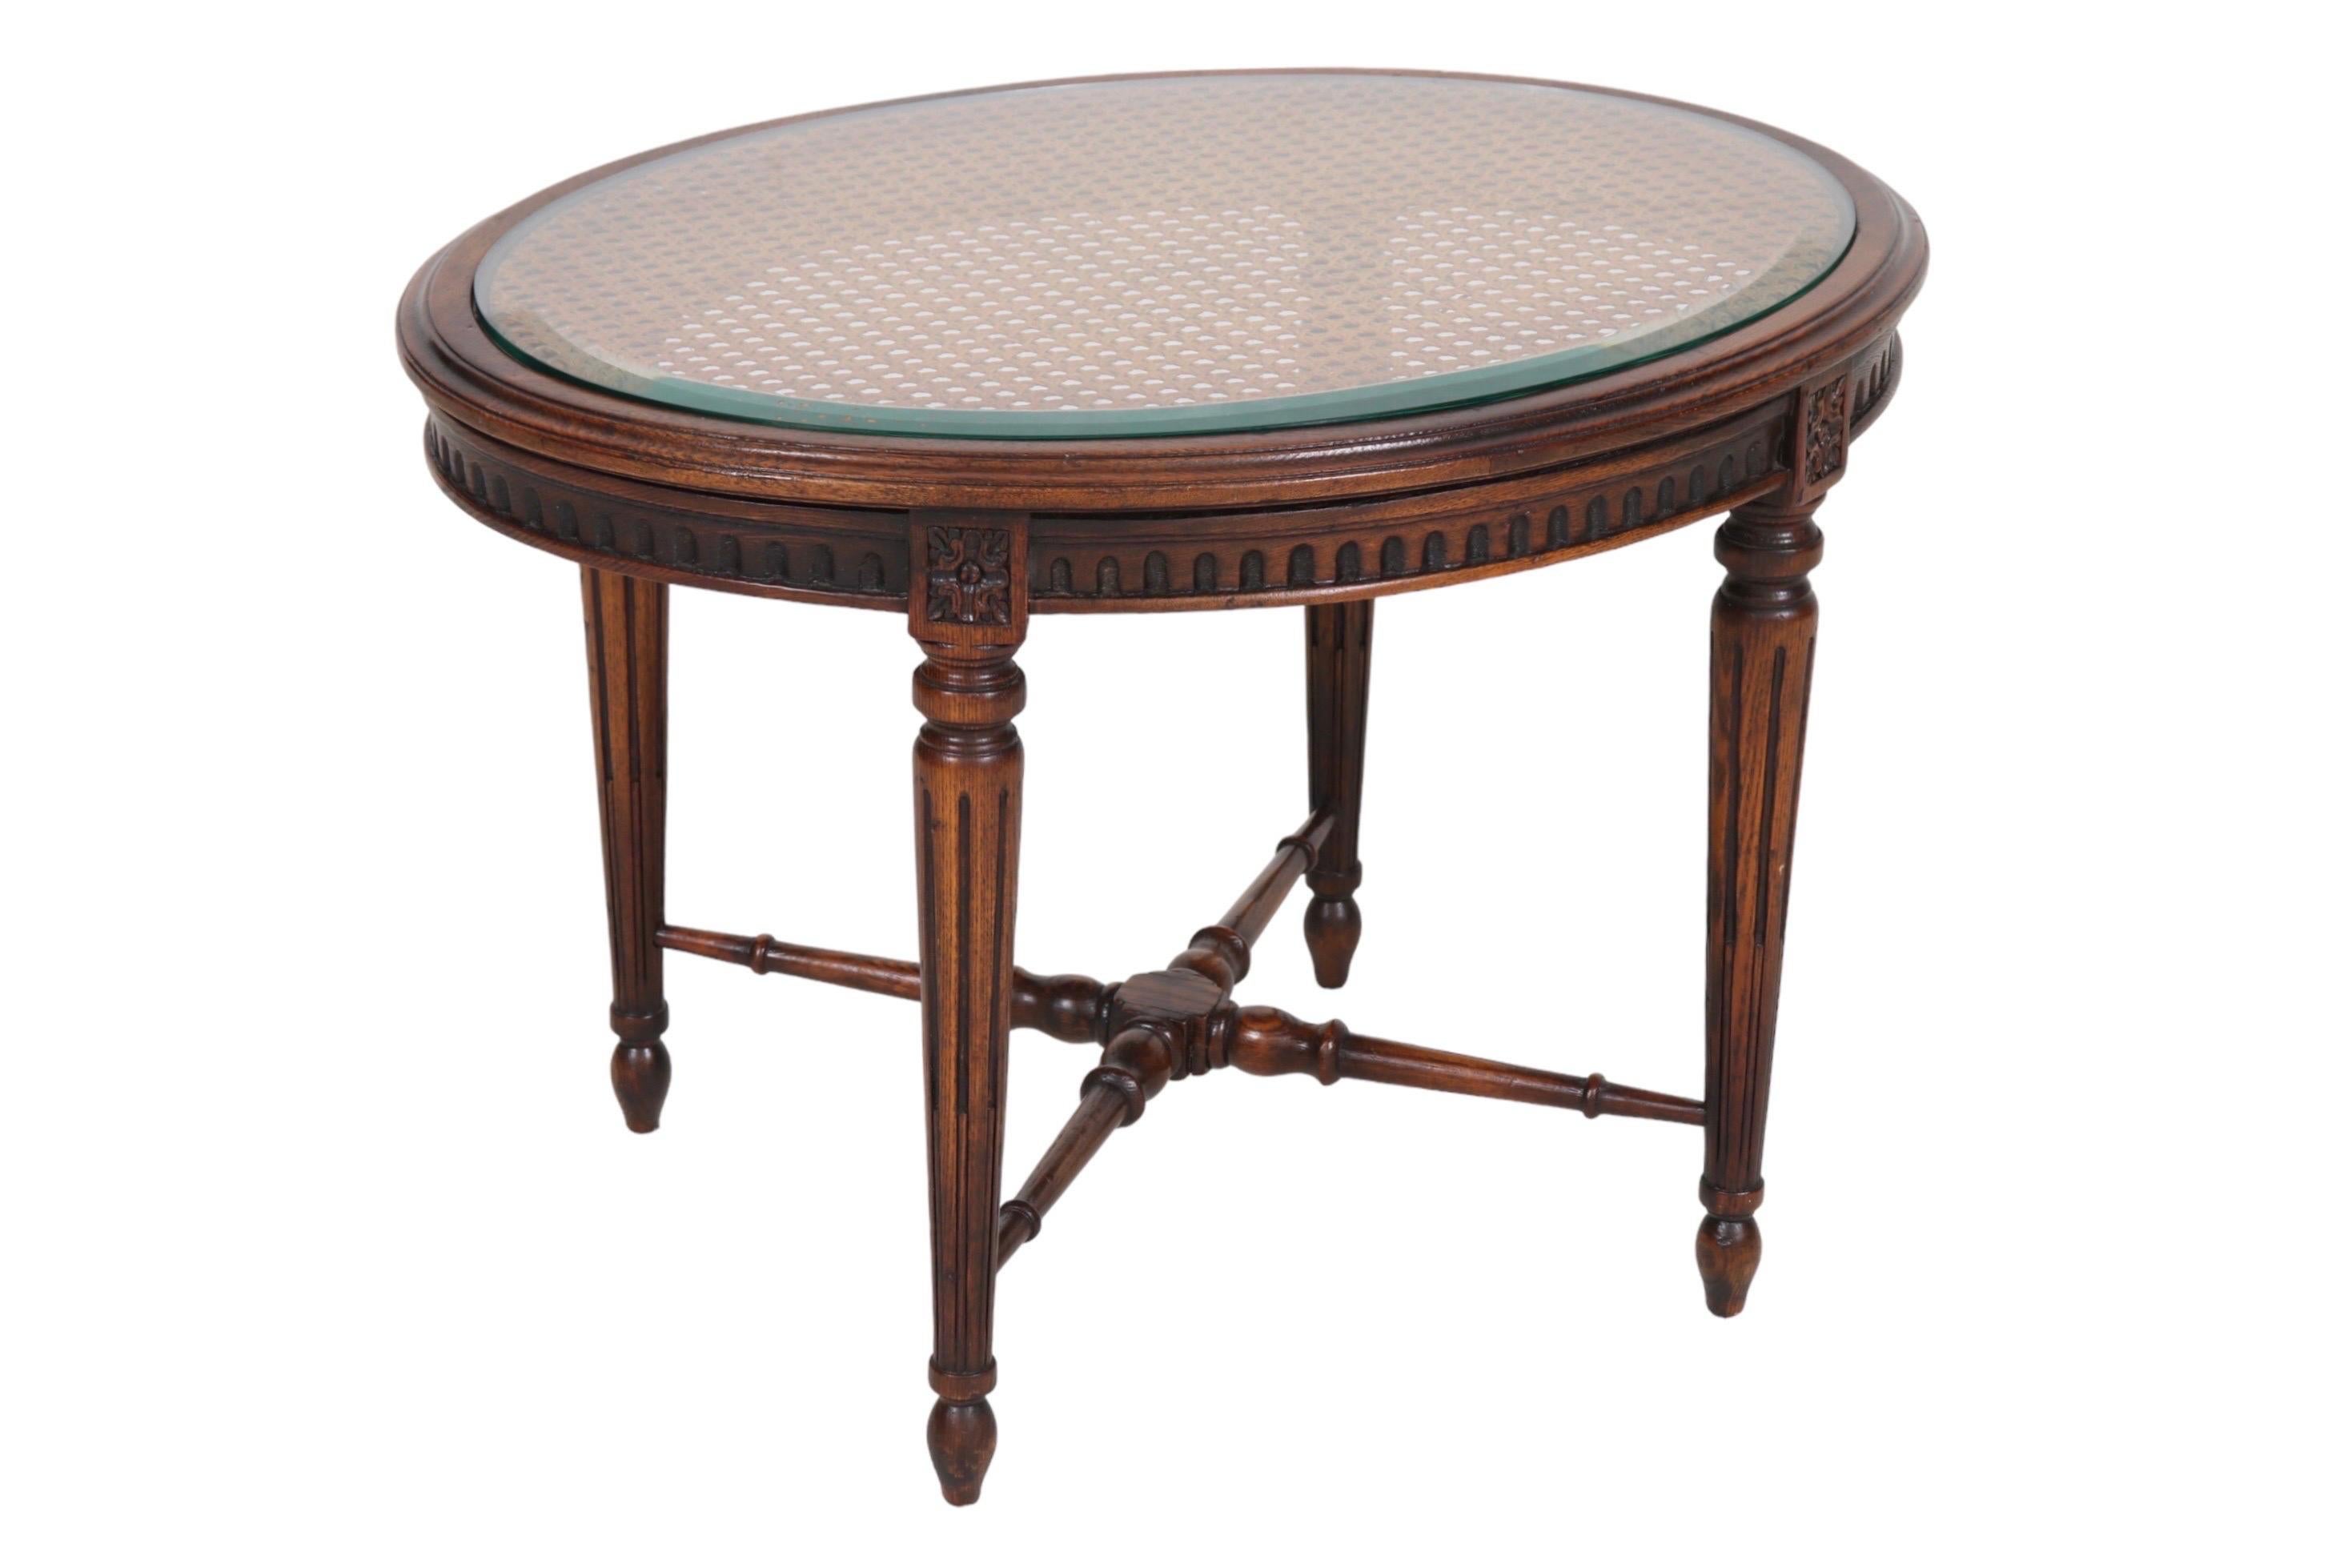 Ein ovaler Beistelltisch im Louis XVI-Stil. Die geschwungene Tischplatte ist mit einer abgeschrägten Glasplatte bedeckt. Die runden, spitz zulaufenden Beine sind kanneliert, mit quadratisch geschnitzten Rosetten gekrönt und enden in Rübenfüßen. Die